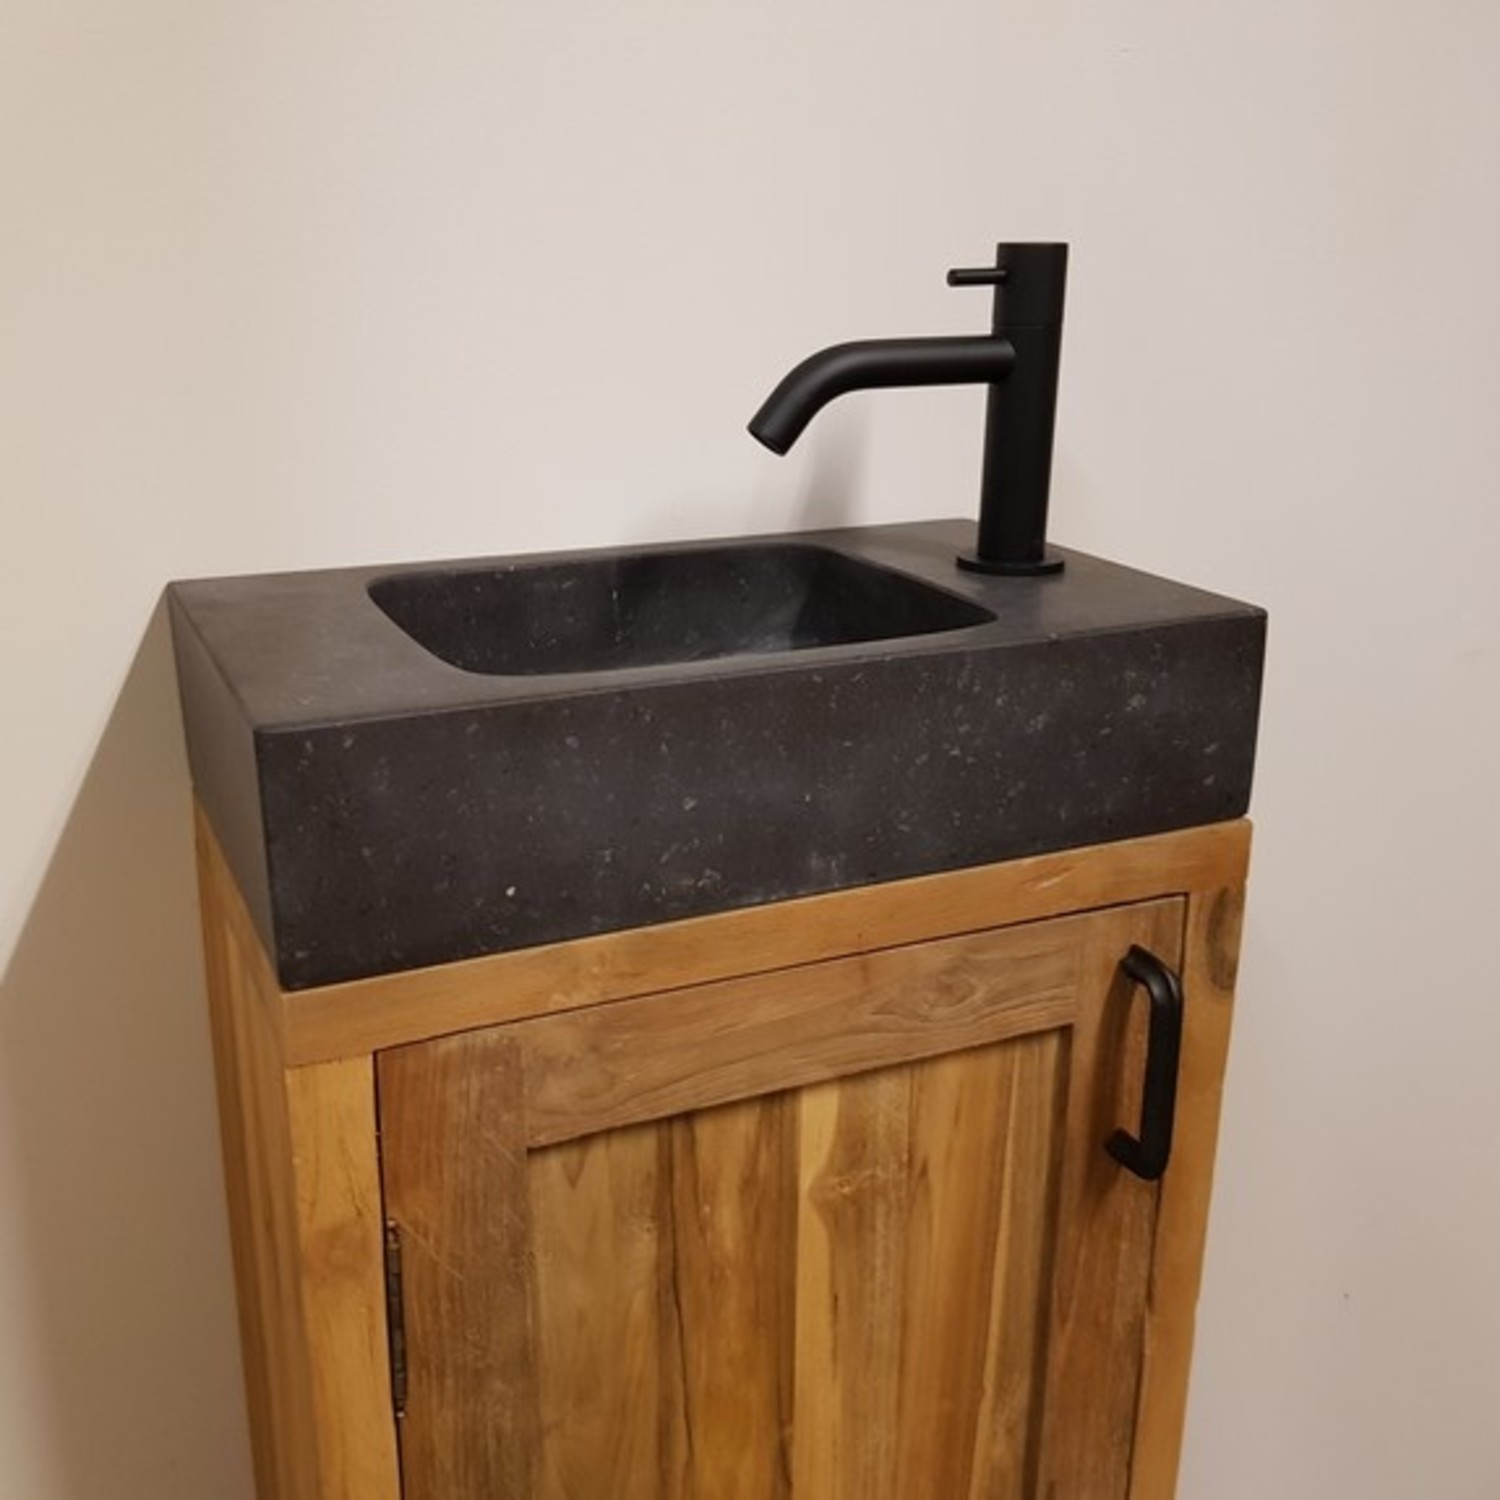 Teak voor toilet compleet - Direct leverbaar bij Wood55 - Wood55